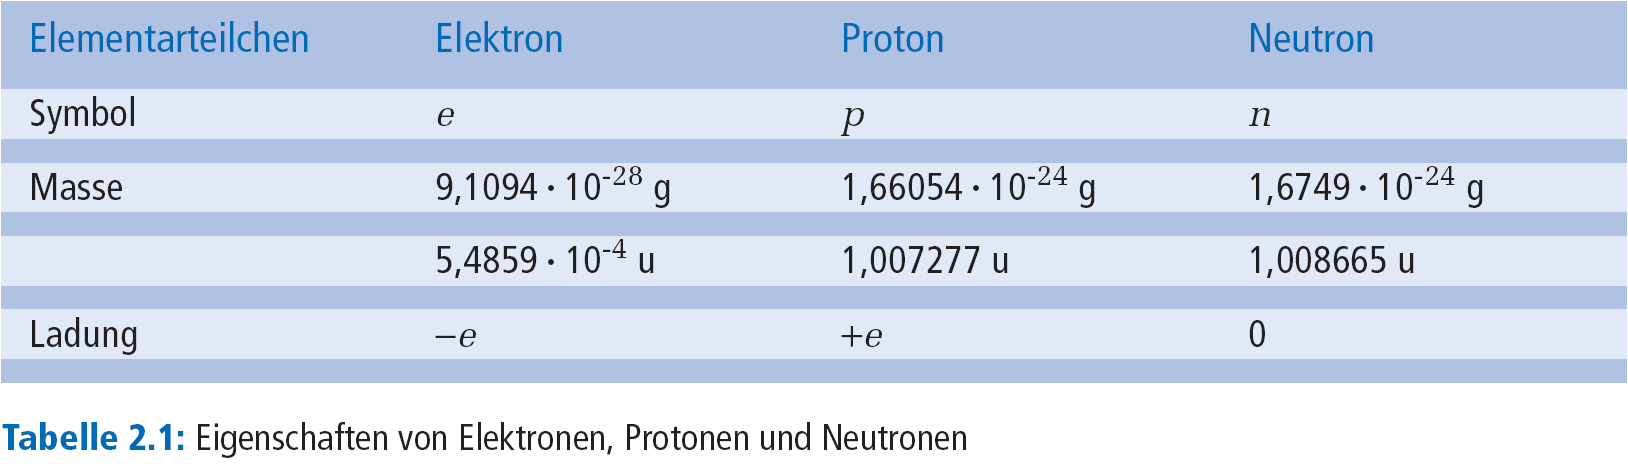 Rutherfordscher Atommodell Ø Kern: 1 10-15 m Ø Hülle:1 10-10 m Modell: Atom besteht aus einem punktförmigen massereichen, positiv geladenen Kern und einer viel größeren kugelförmigen gleichförmig